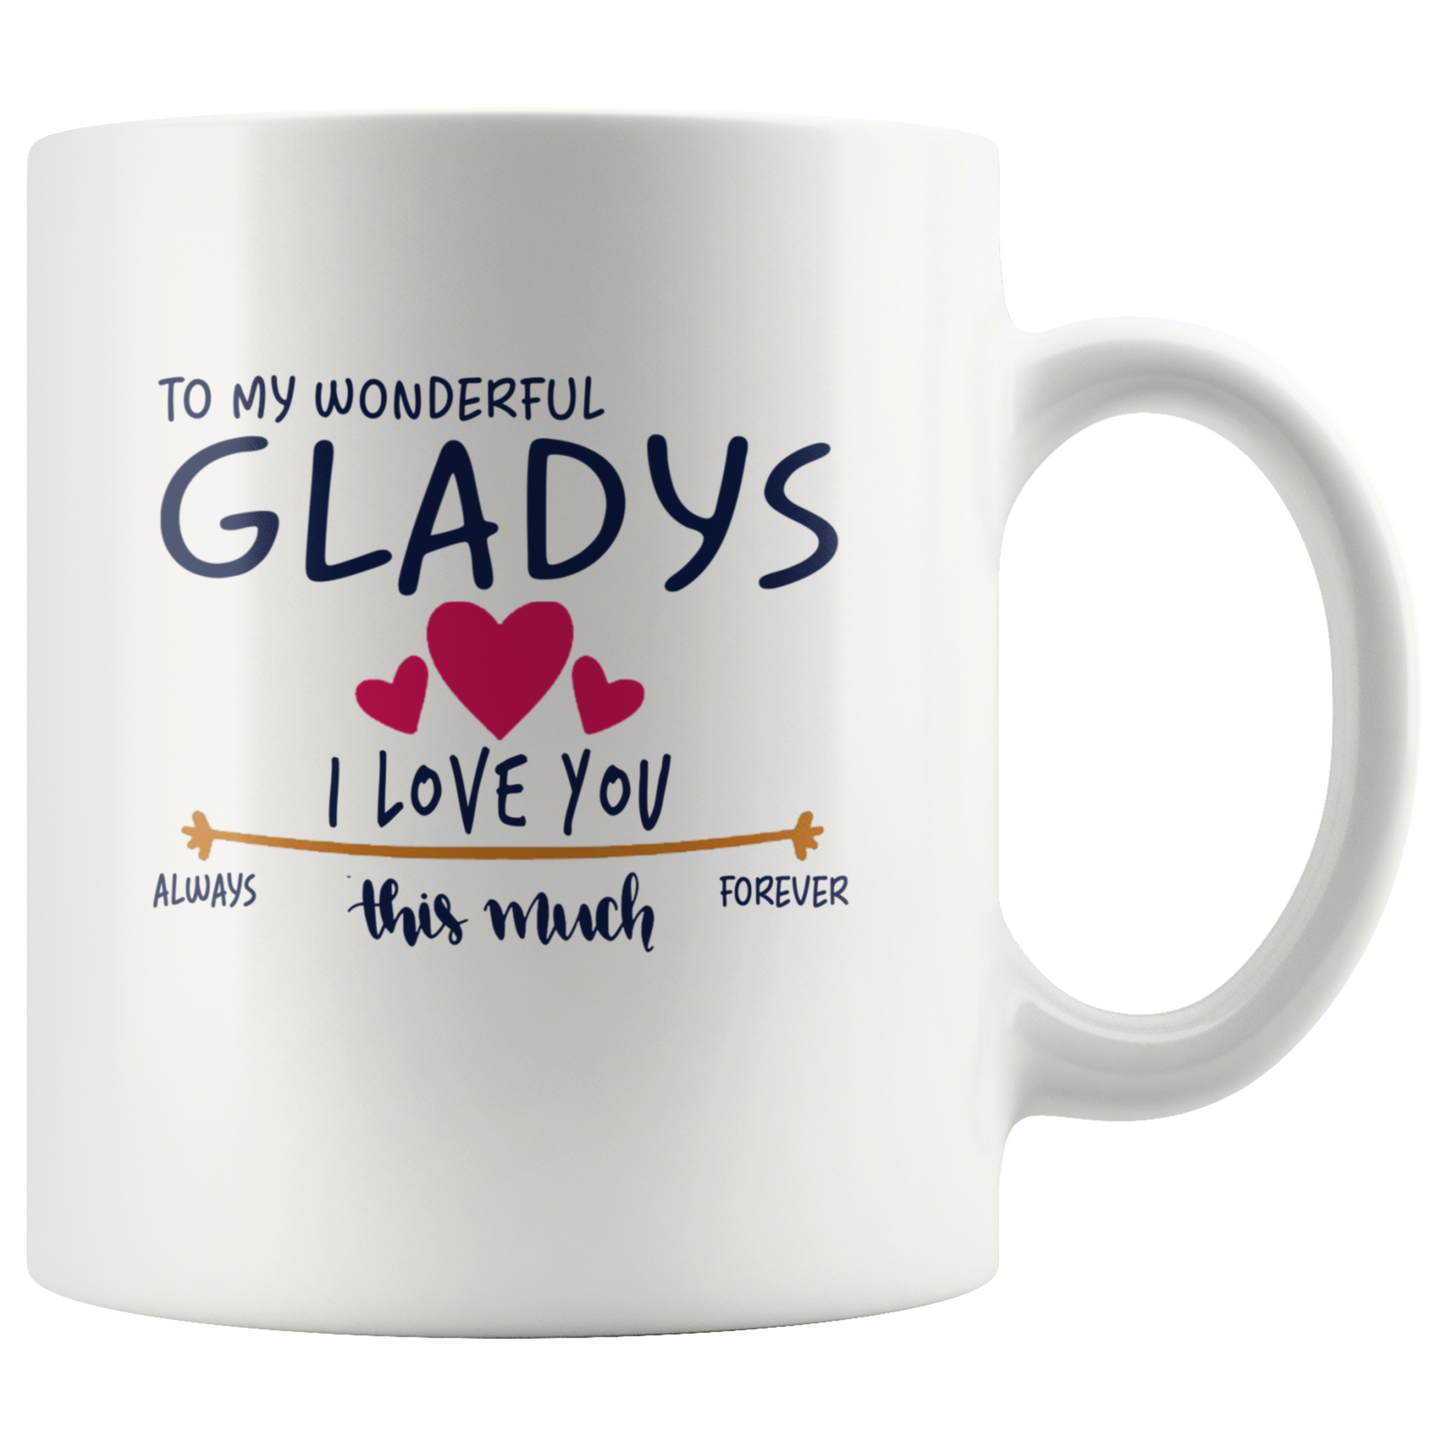 M-21259008-sp-23928 - [ Gladys | 1 | 1 ]Valentines Day Coffee Mug With Name Gladys - To My Wonderful